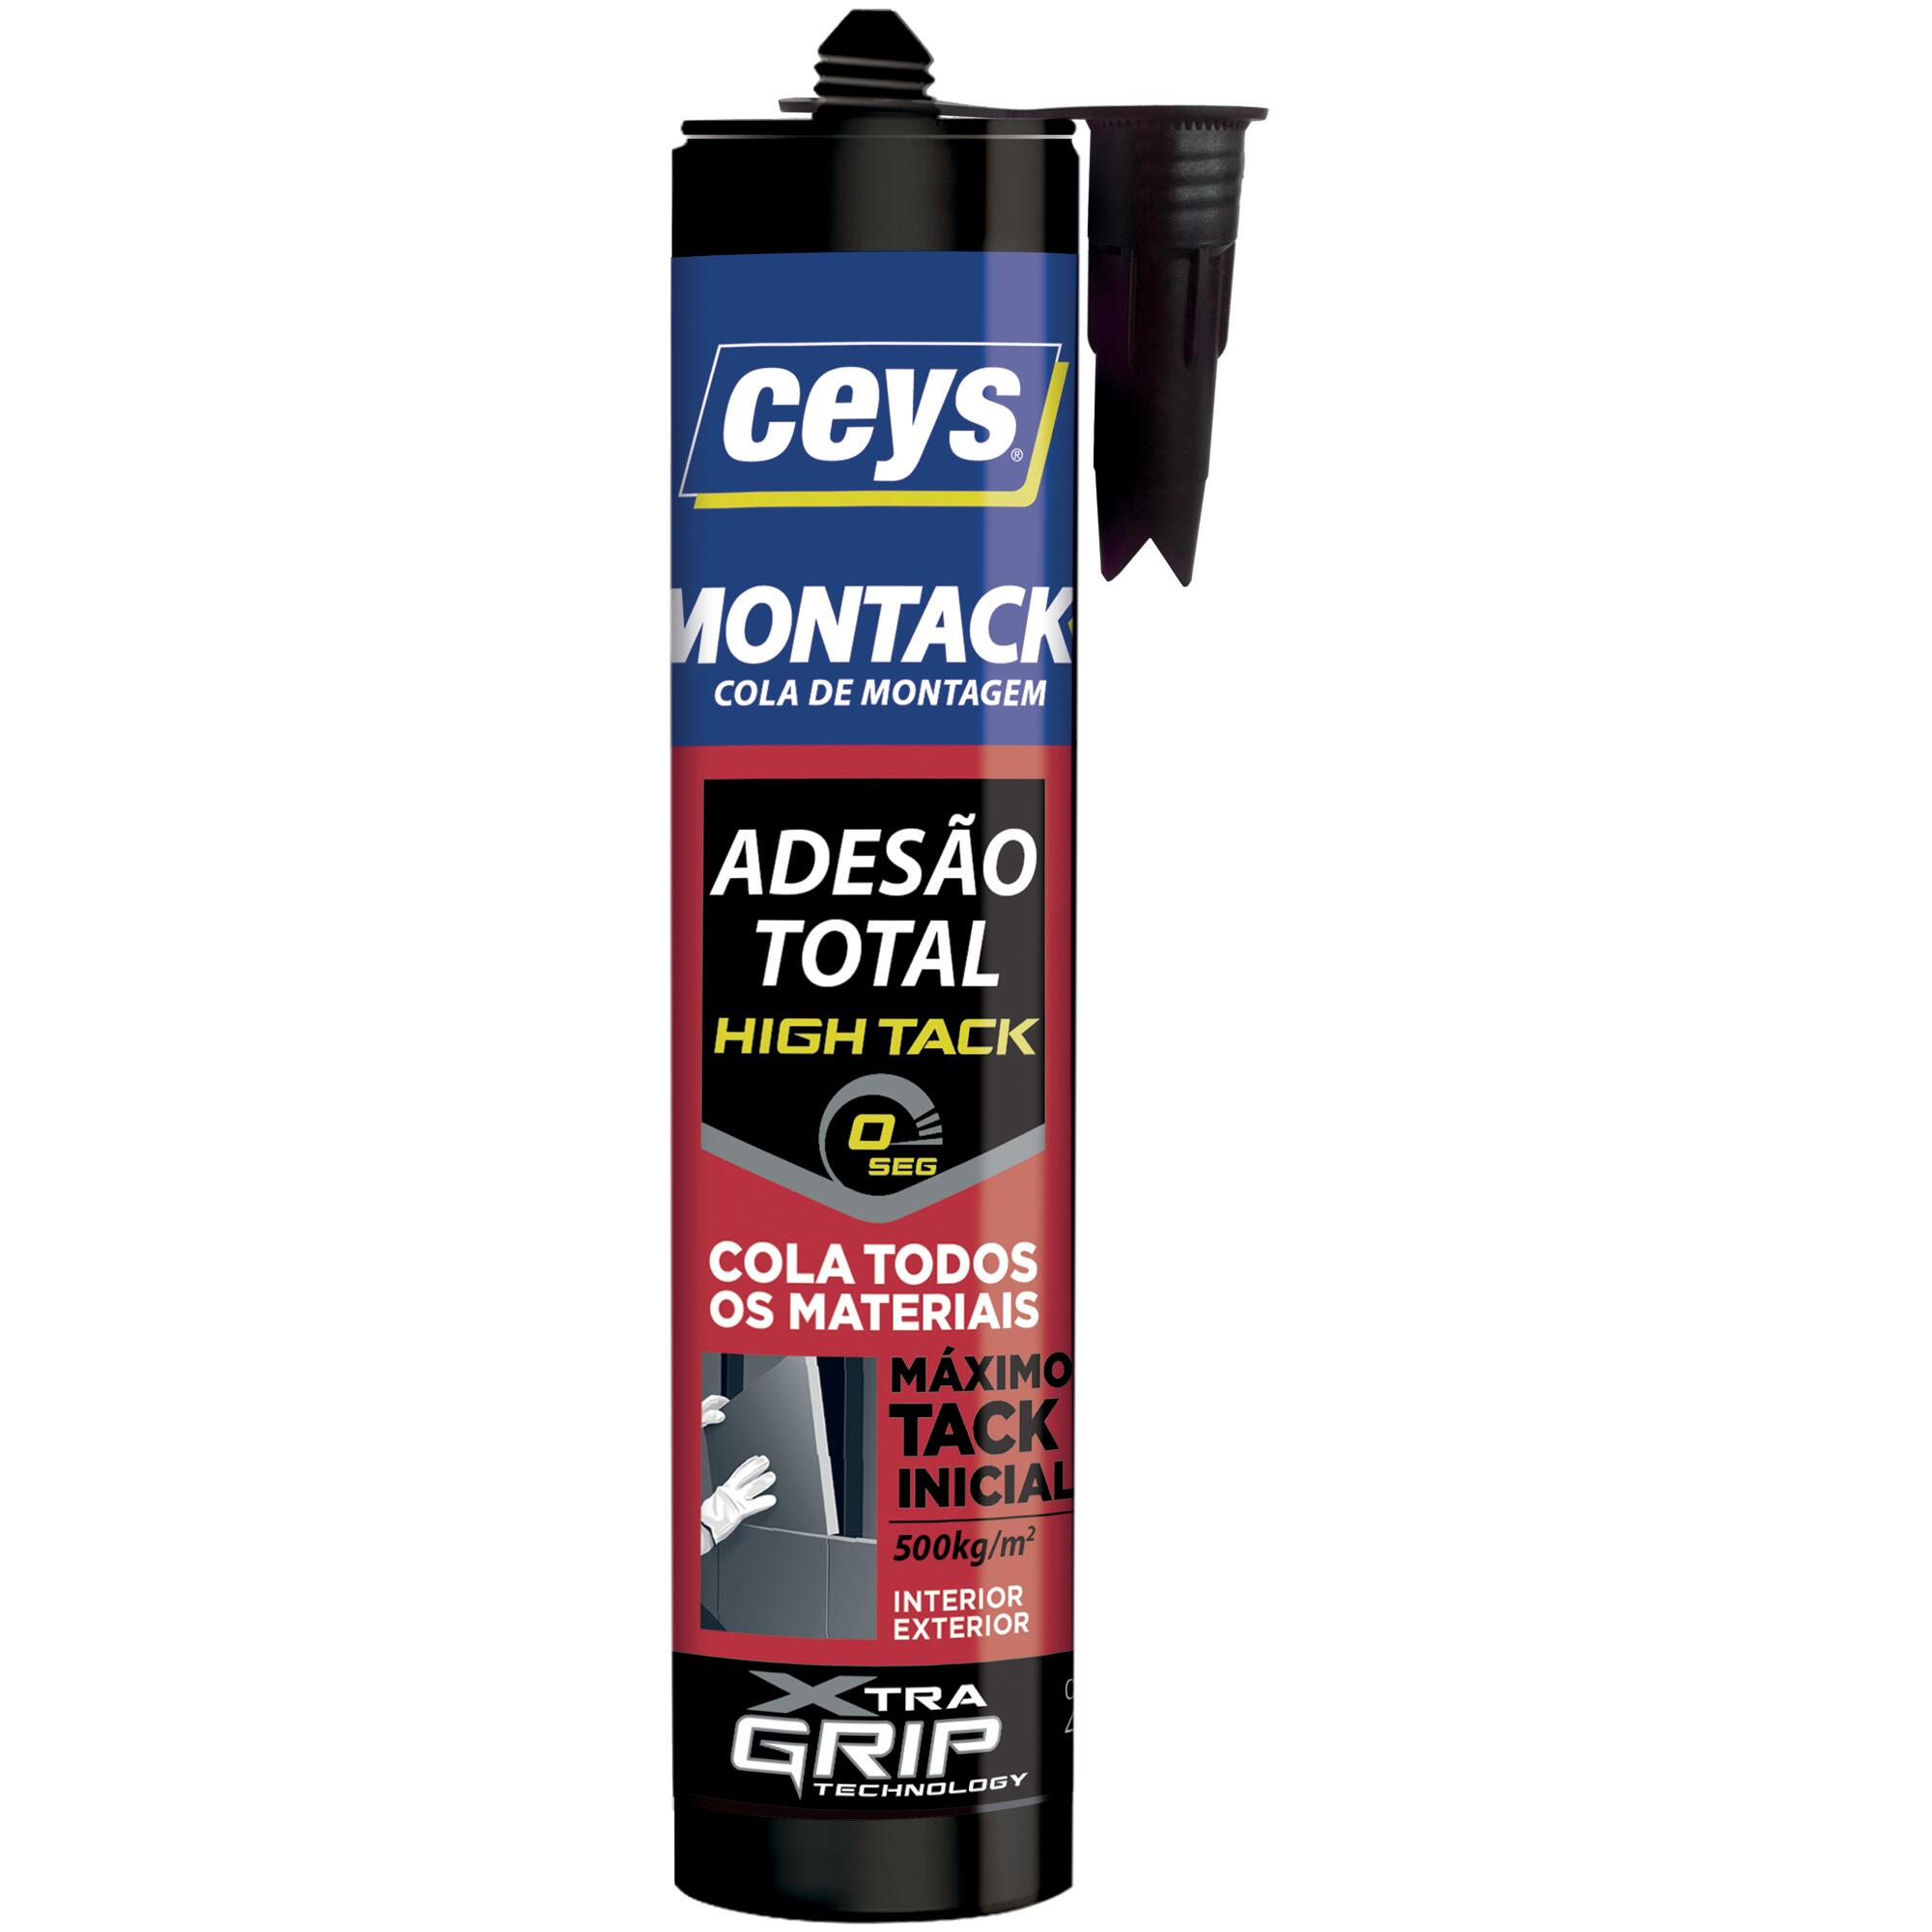 ceys - Cinta de montaje - Montack a.t - Inmediato - 7,5m x 19mm :  : Bricolaje y herramientas